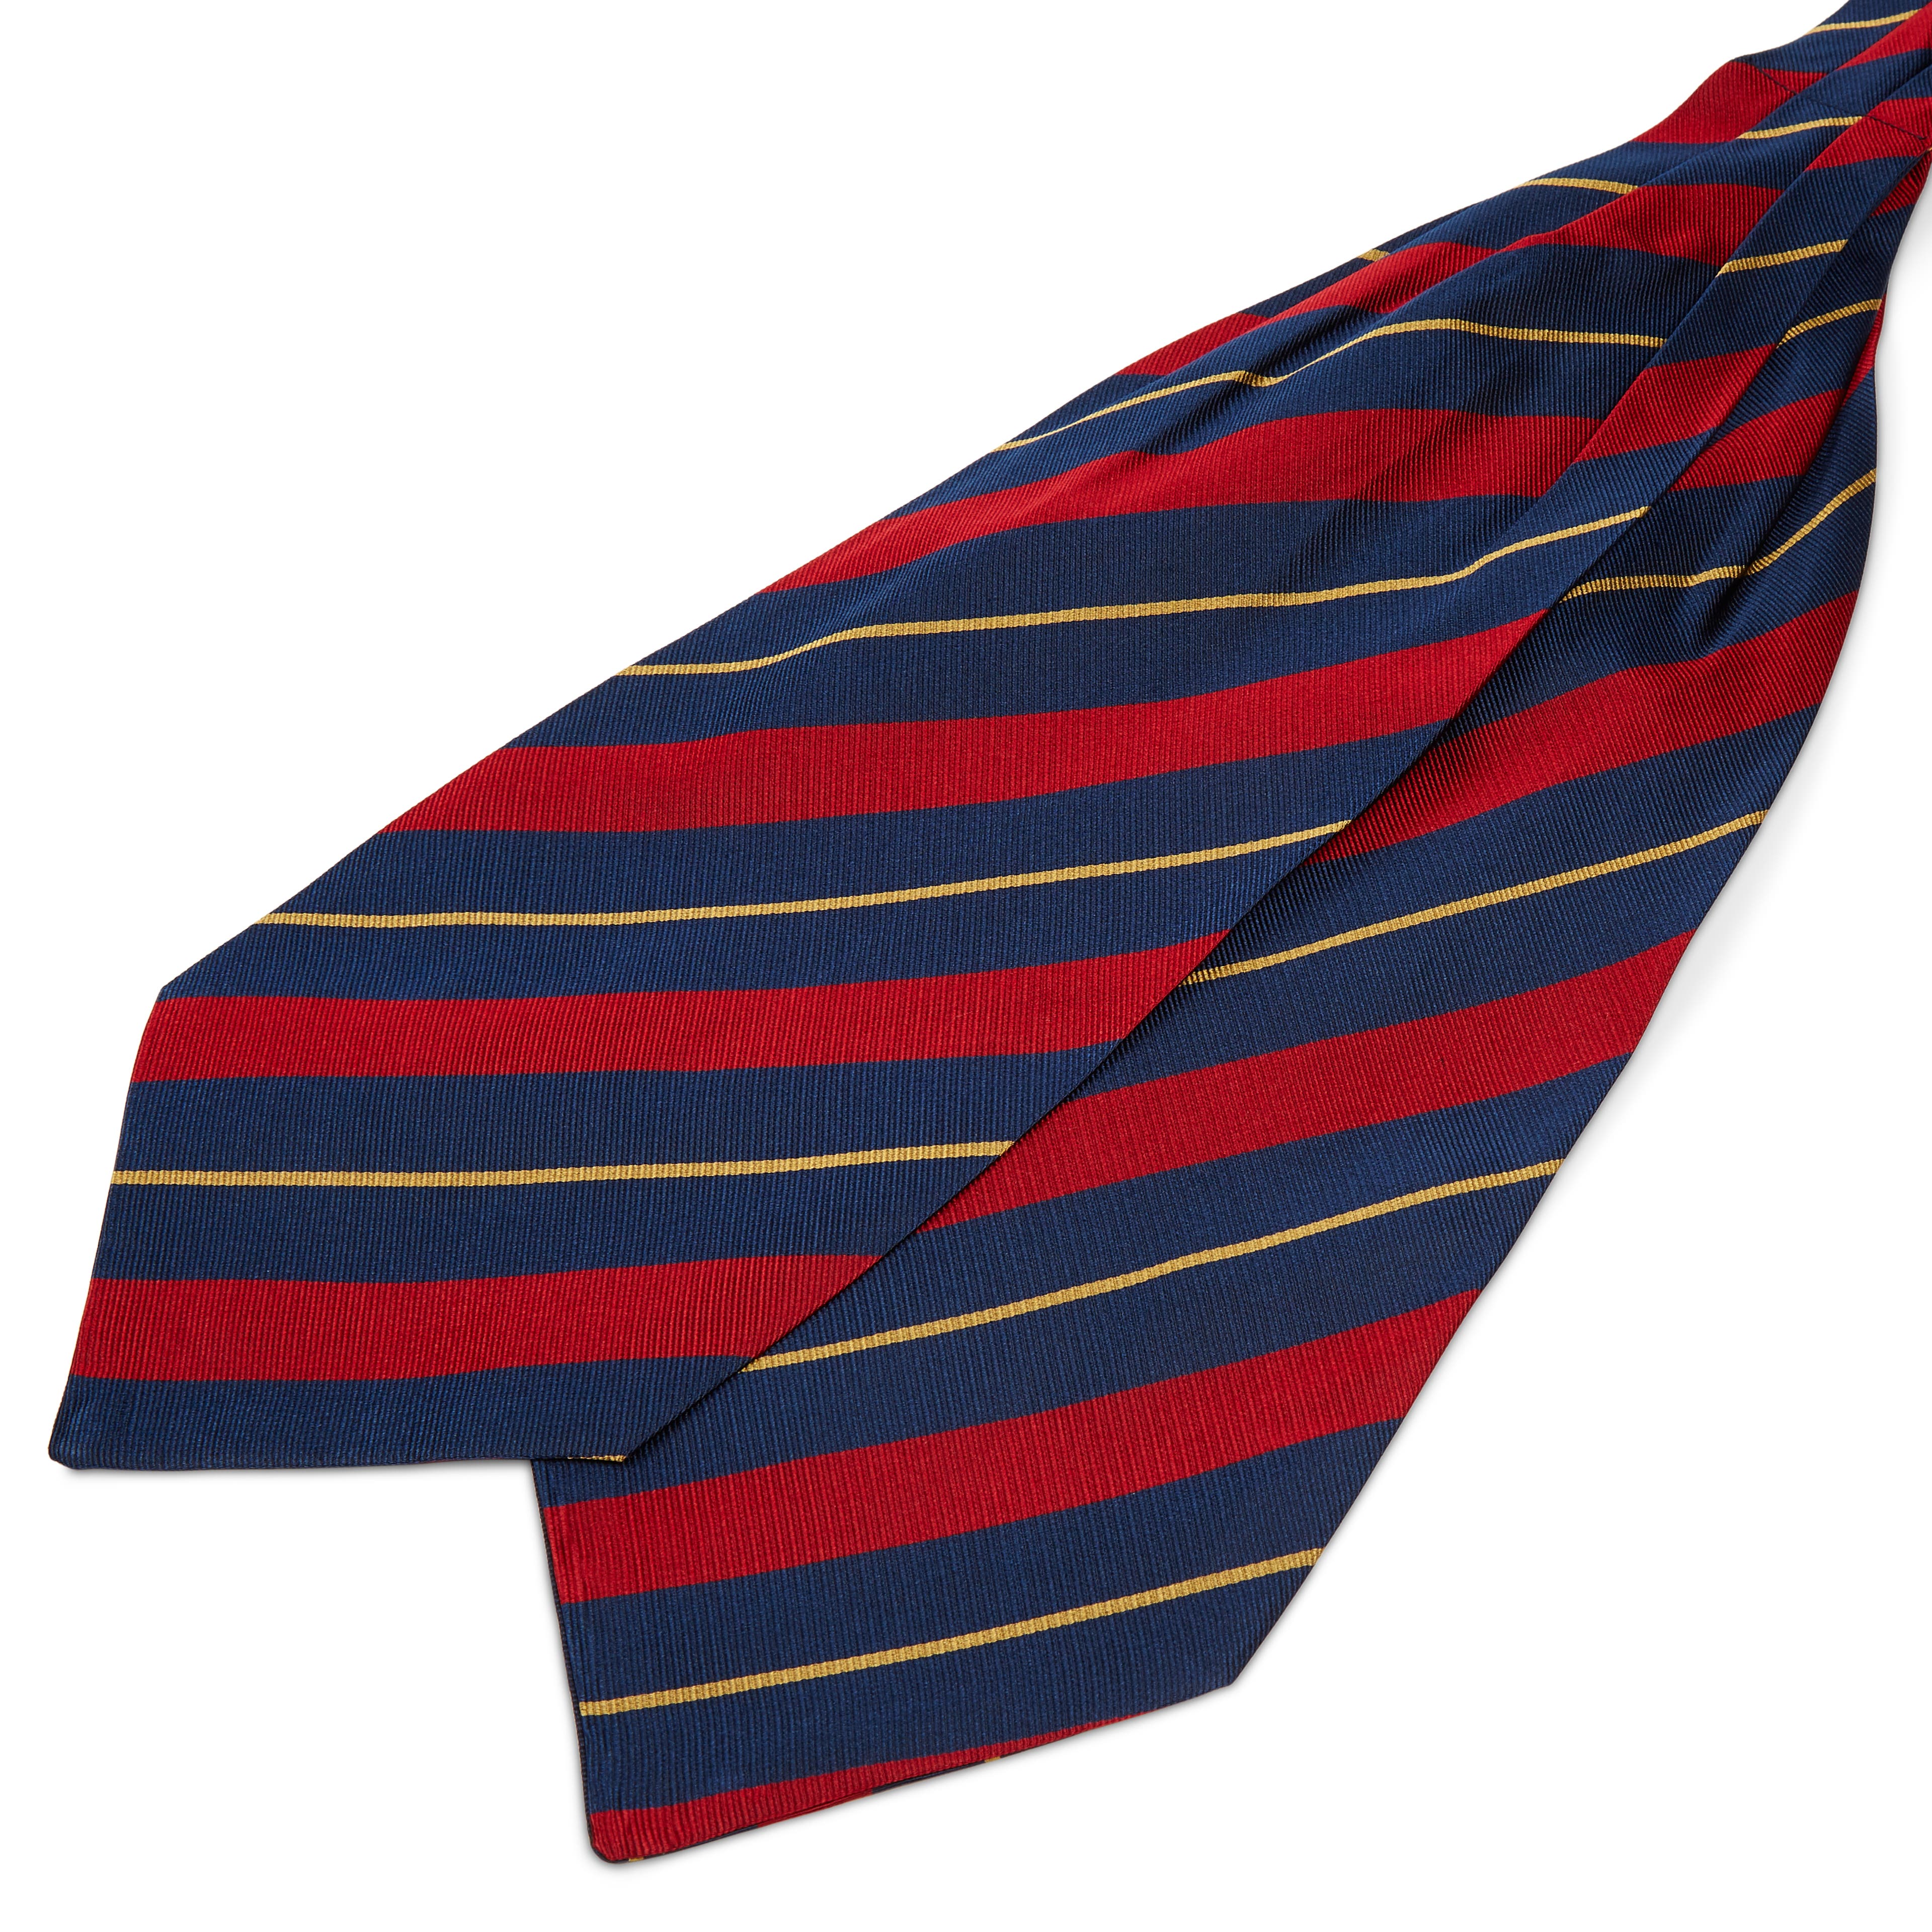 Tengerészkék-piros-arany csíkos selyem kravátli